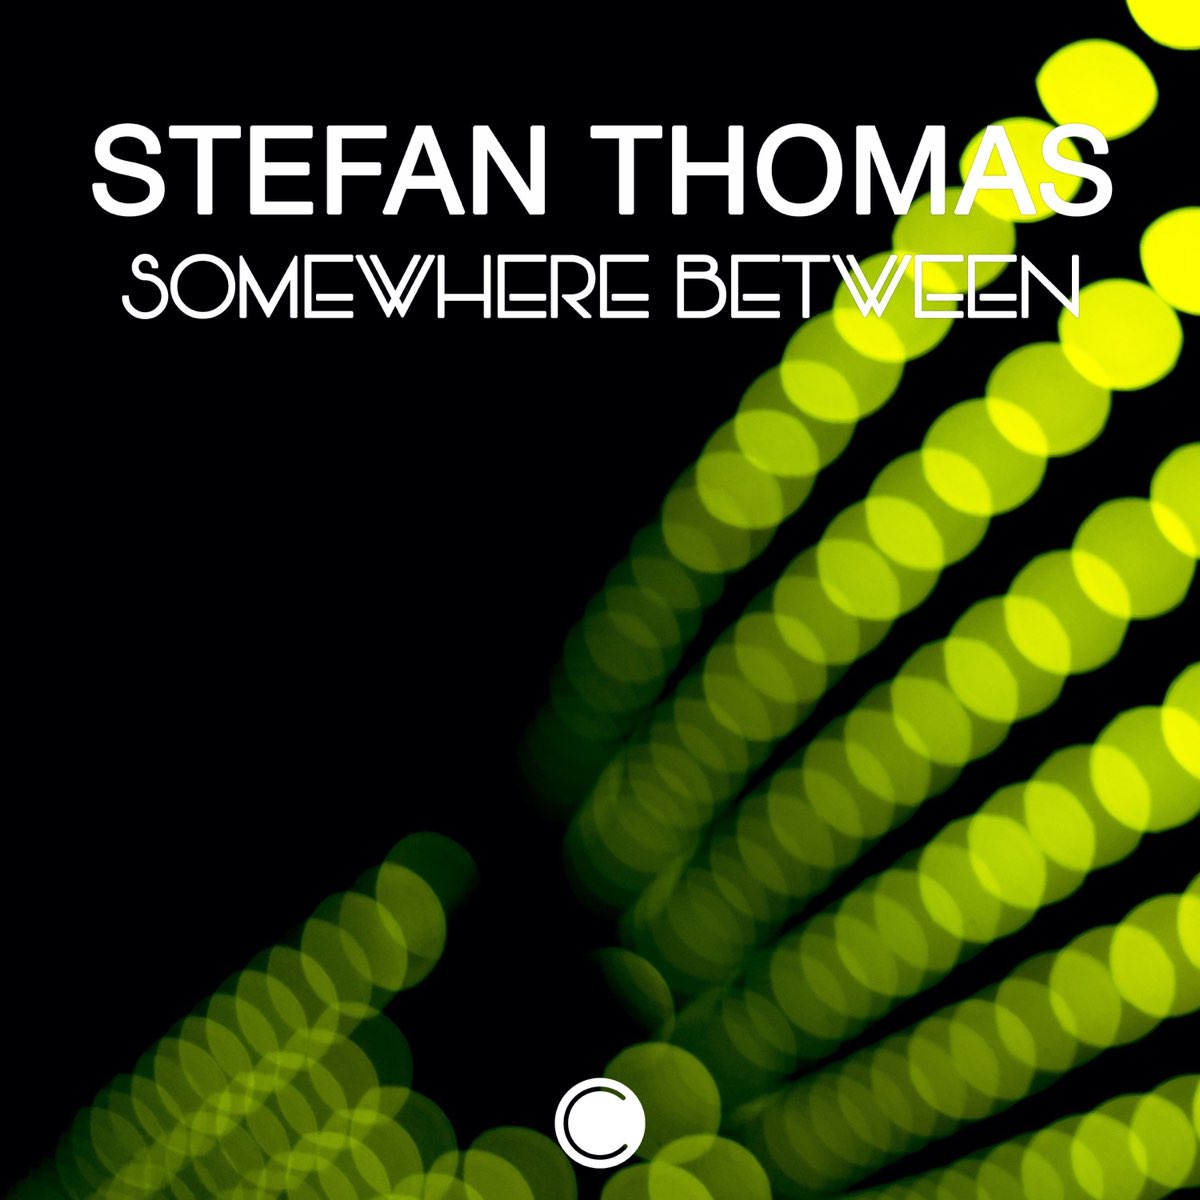 Stefan Thomas. Something in between